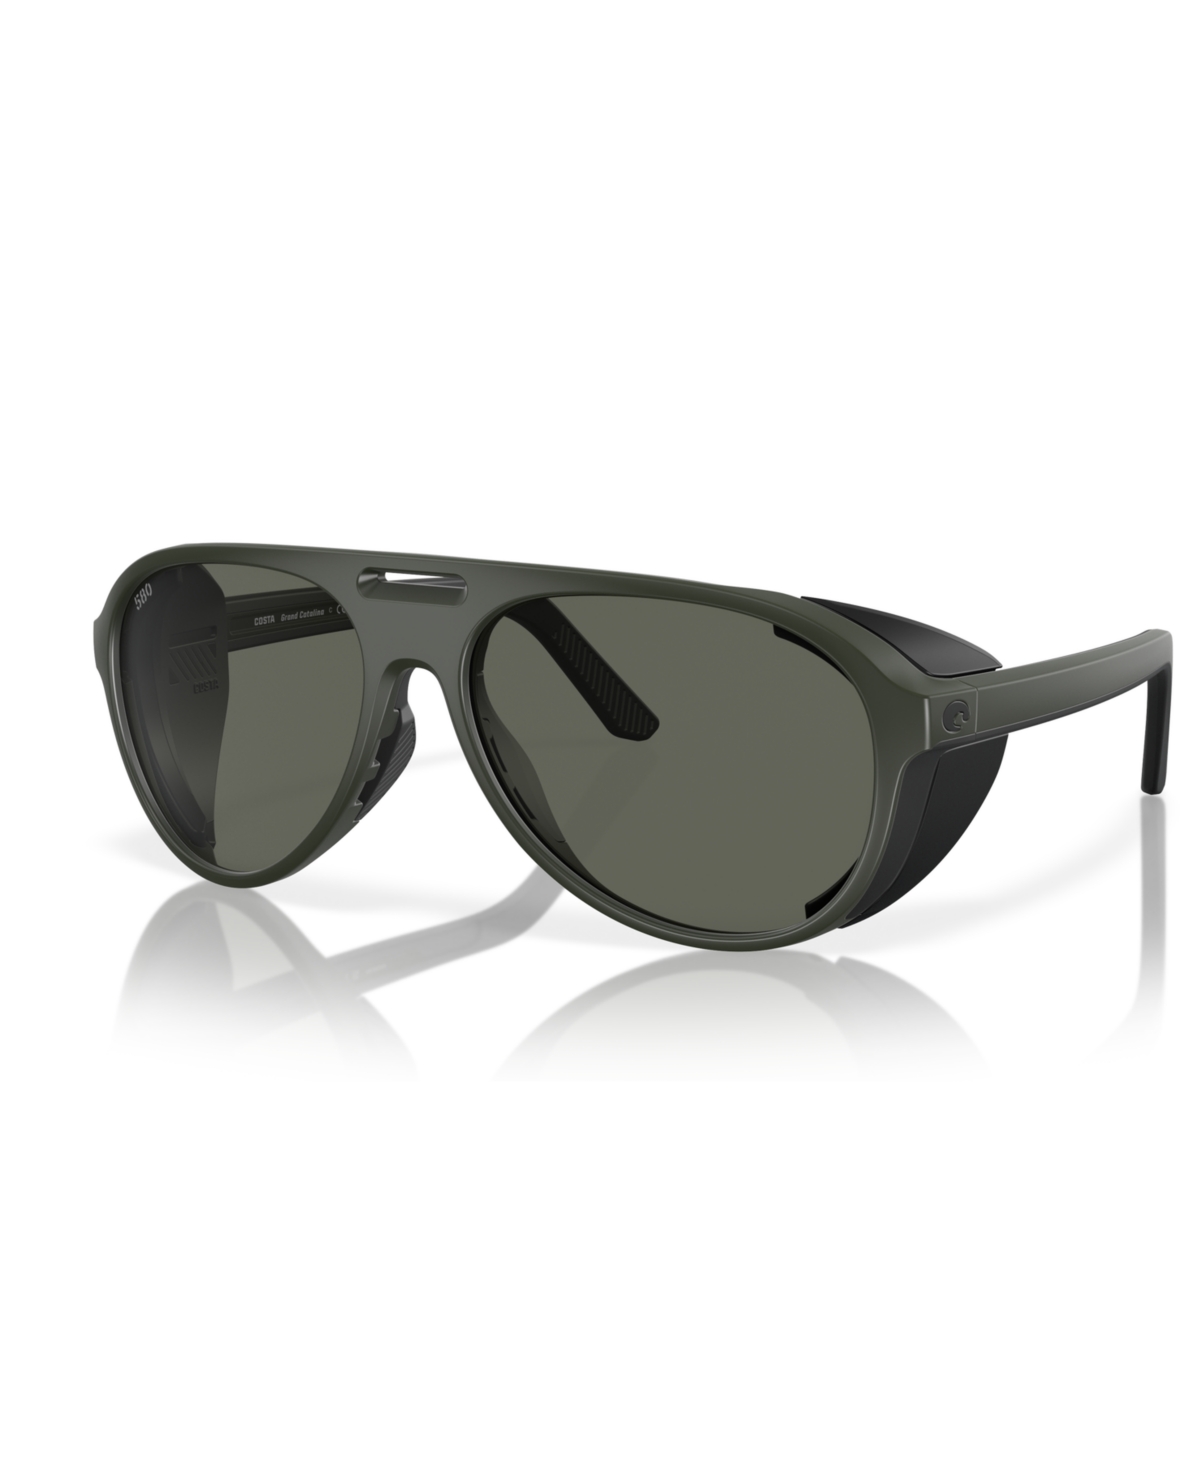 Costa Del Mar Men's Polarized Sunglasses, Grand Catalina 6s9117 In Green